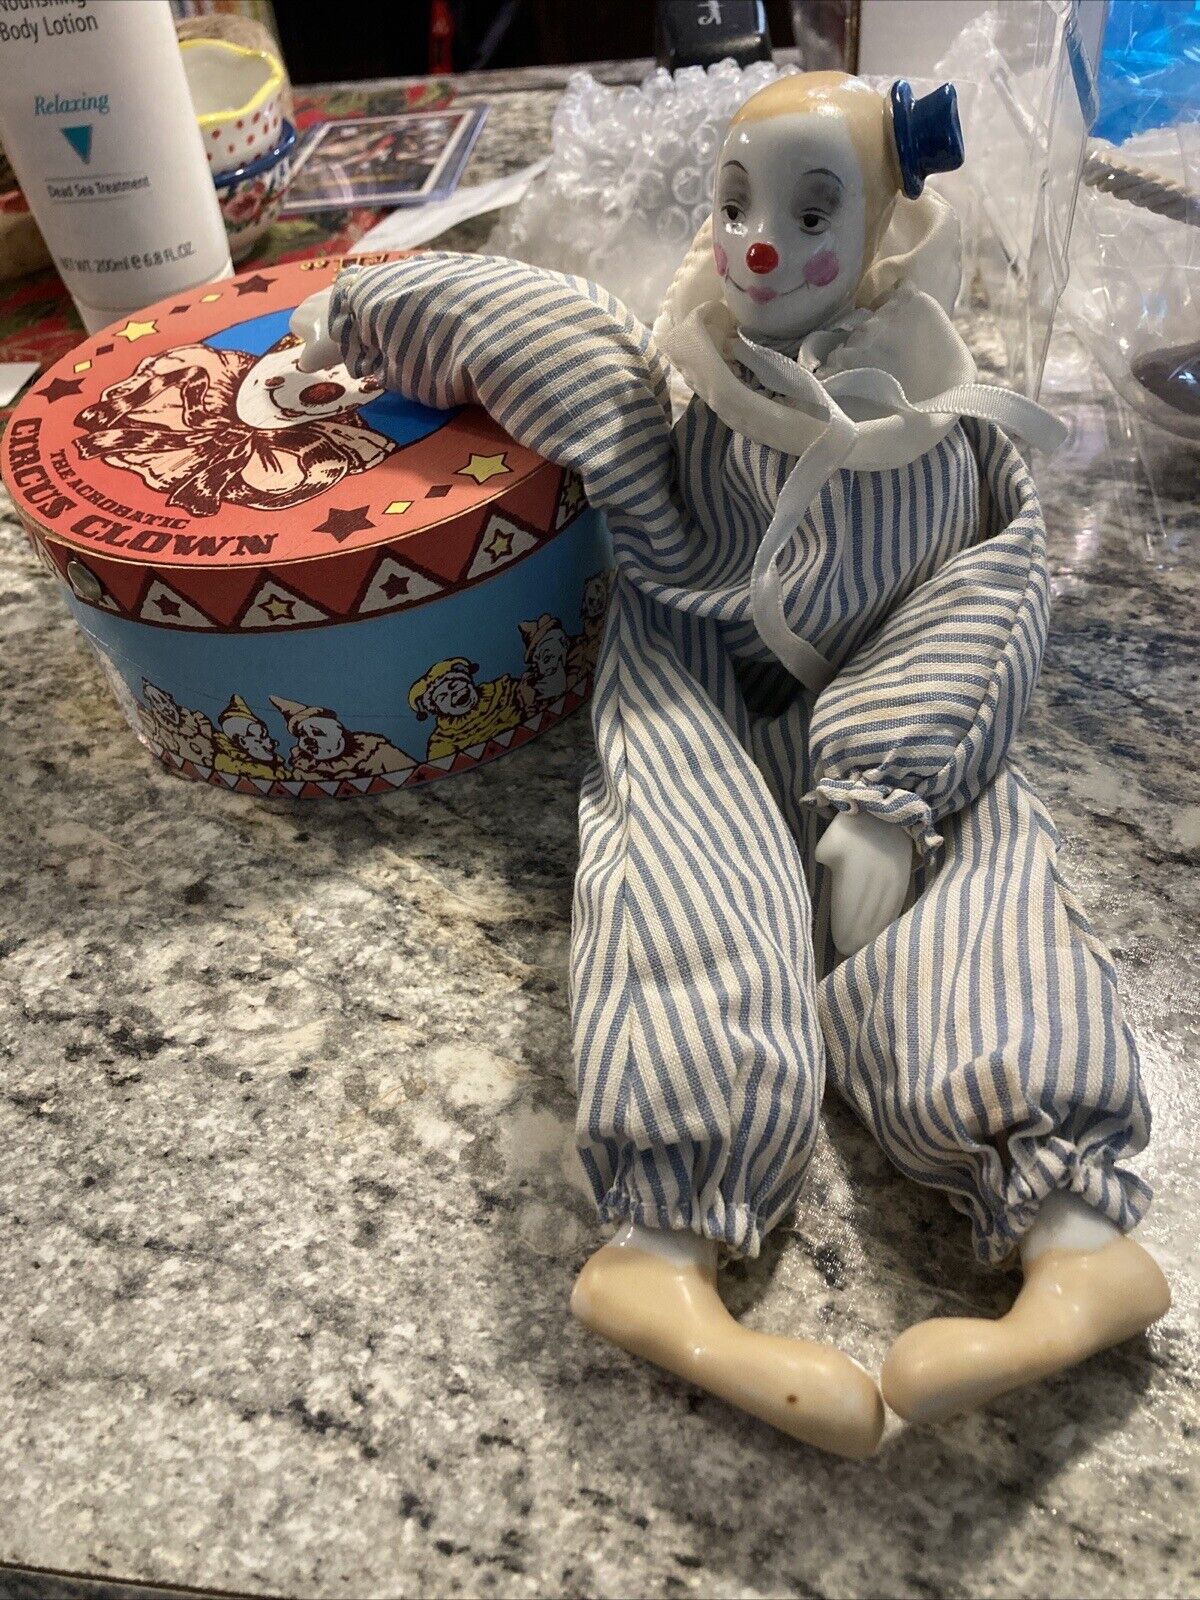 Vintage Enesco Flippy Circus Clown Ceramic Figurine In Original Box (1983)